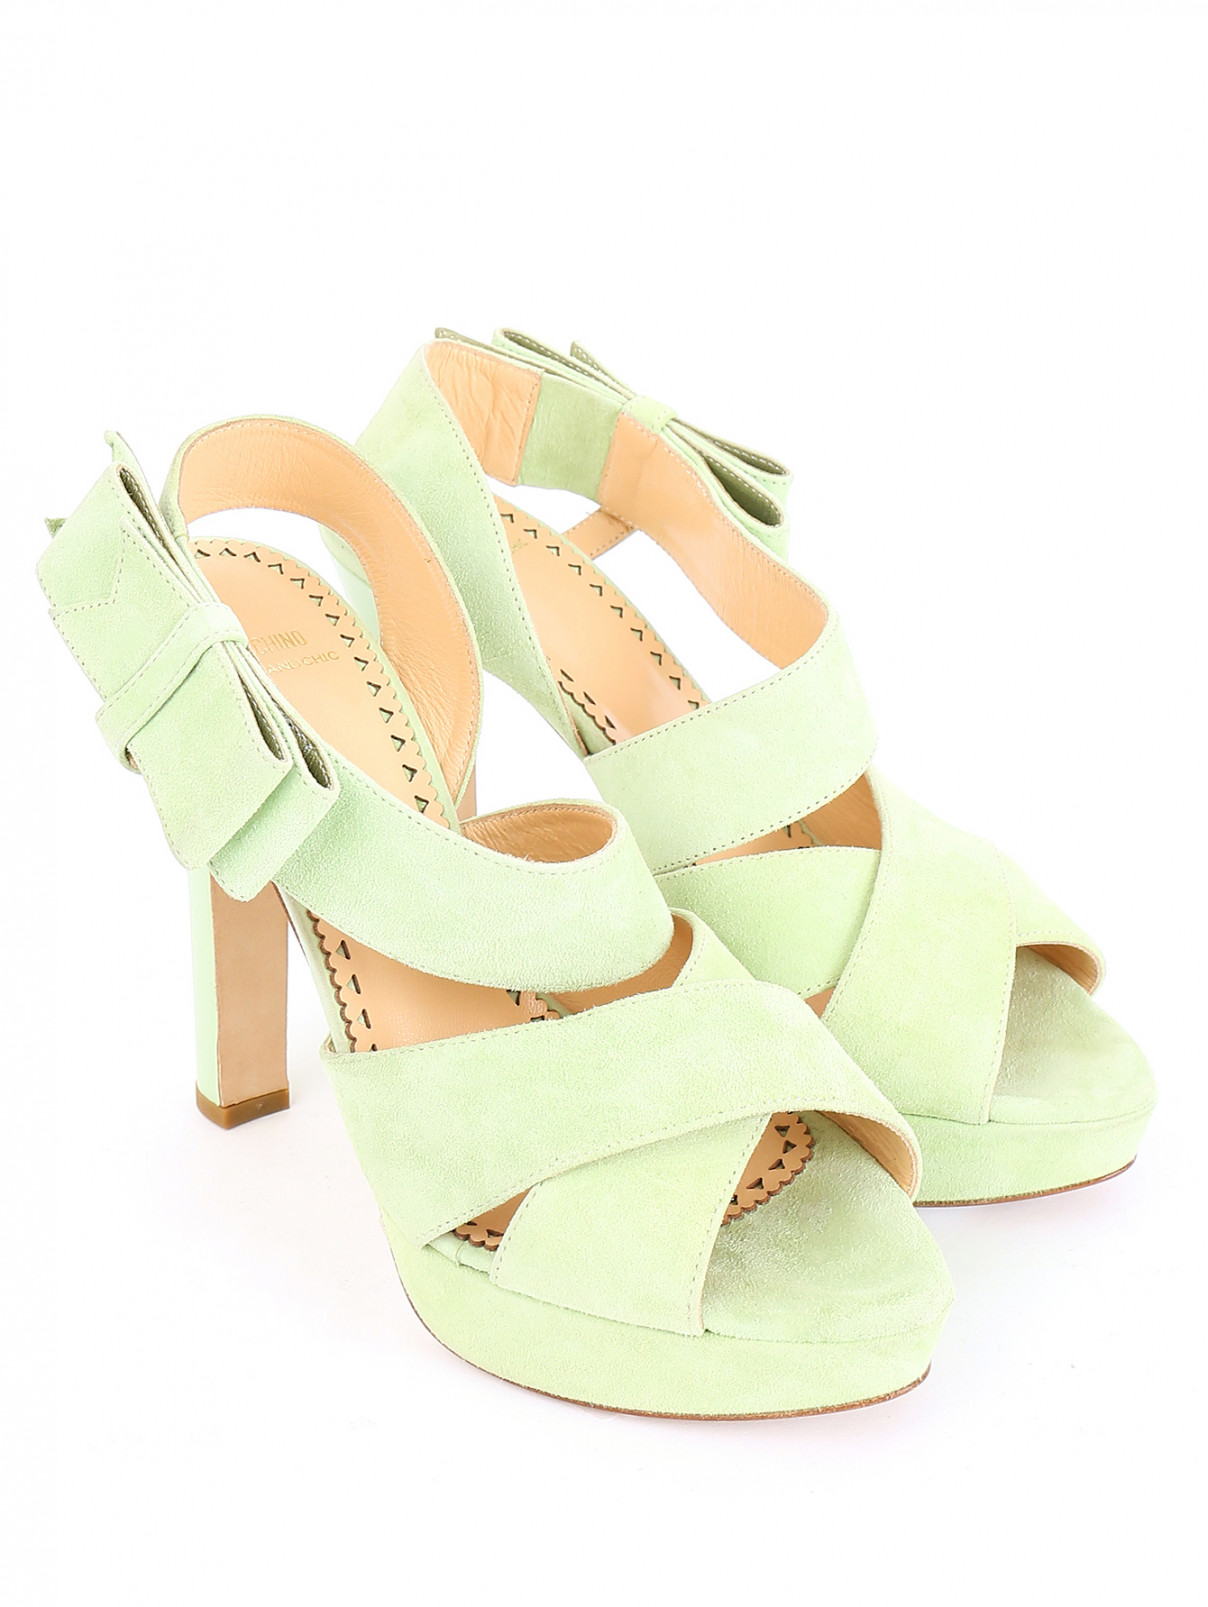 Босоножки из замши на высоком каблуке Moschino Cheap&Chic  –  Общий вид  – Цвет:  Зеленый